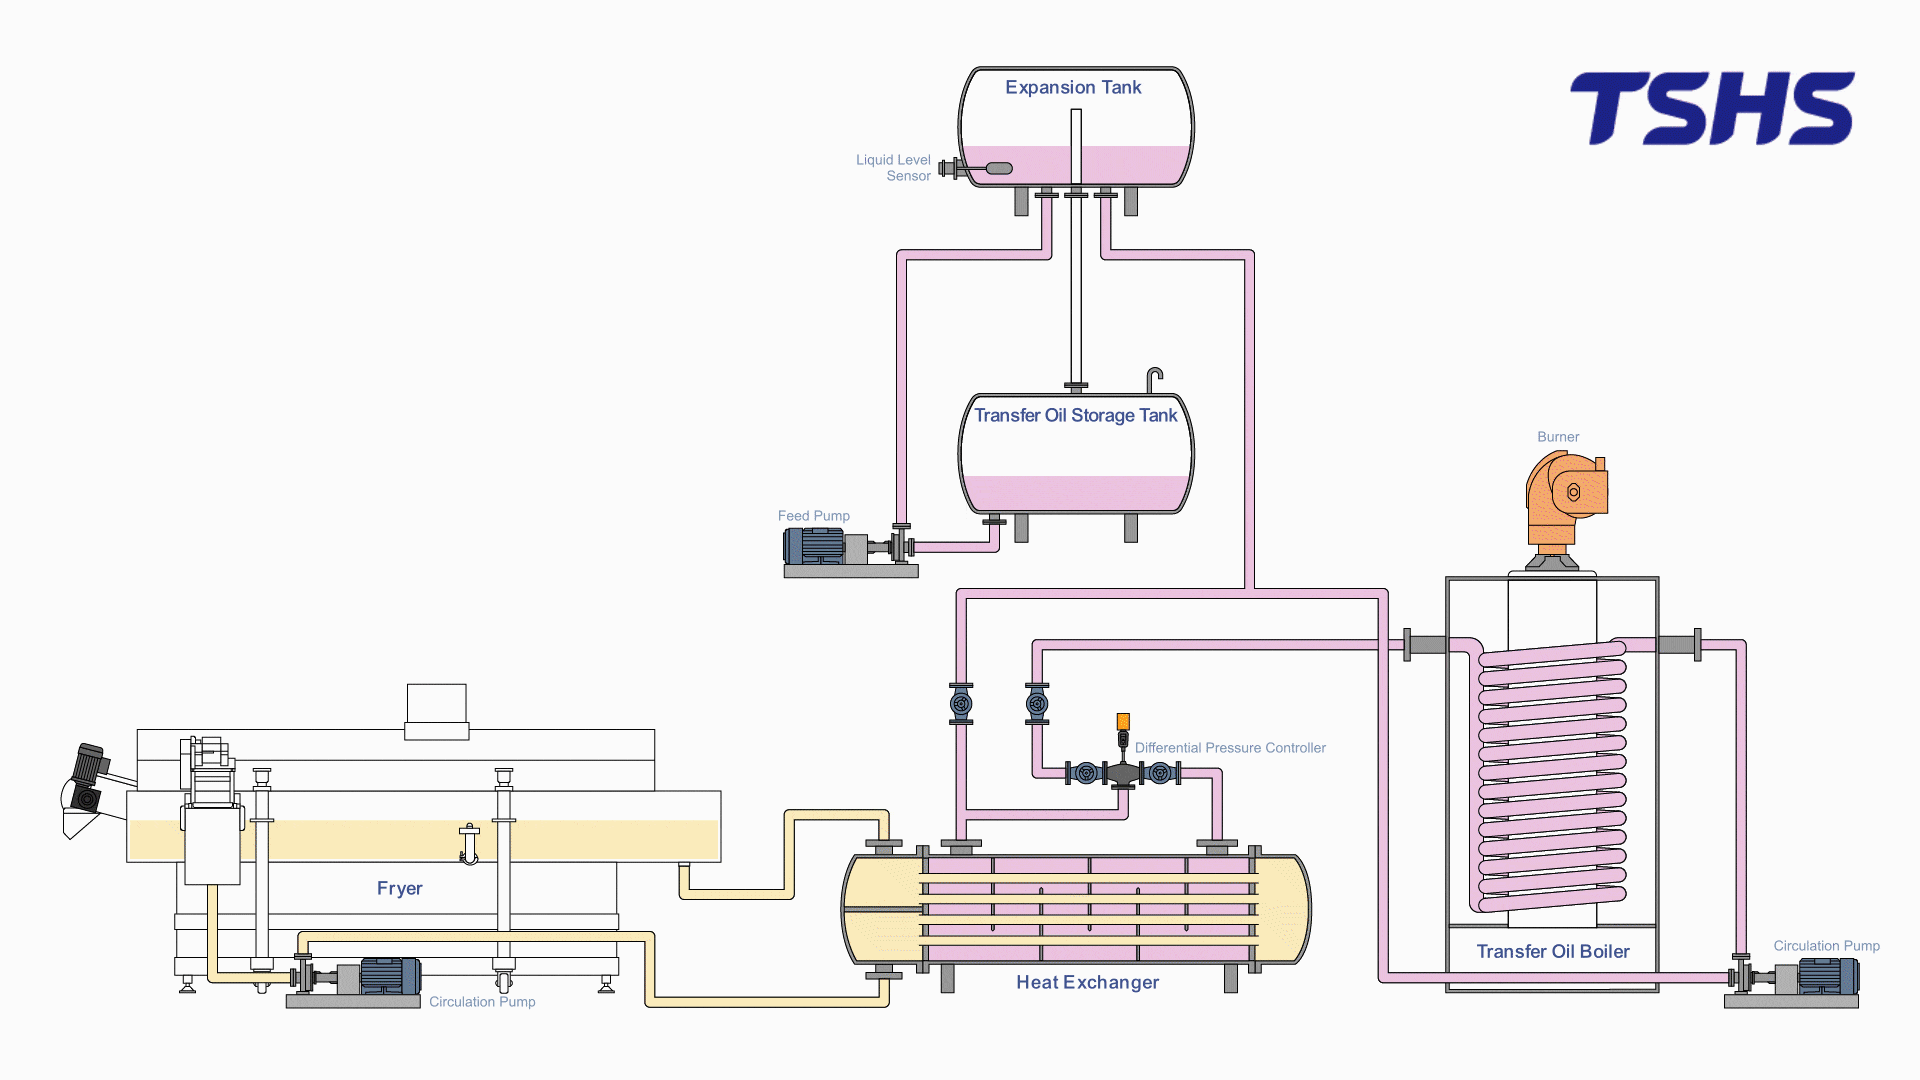 Sistema de intercambio de calor - Calentamiento - Suplemento del tanque de expansión